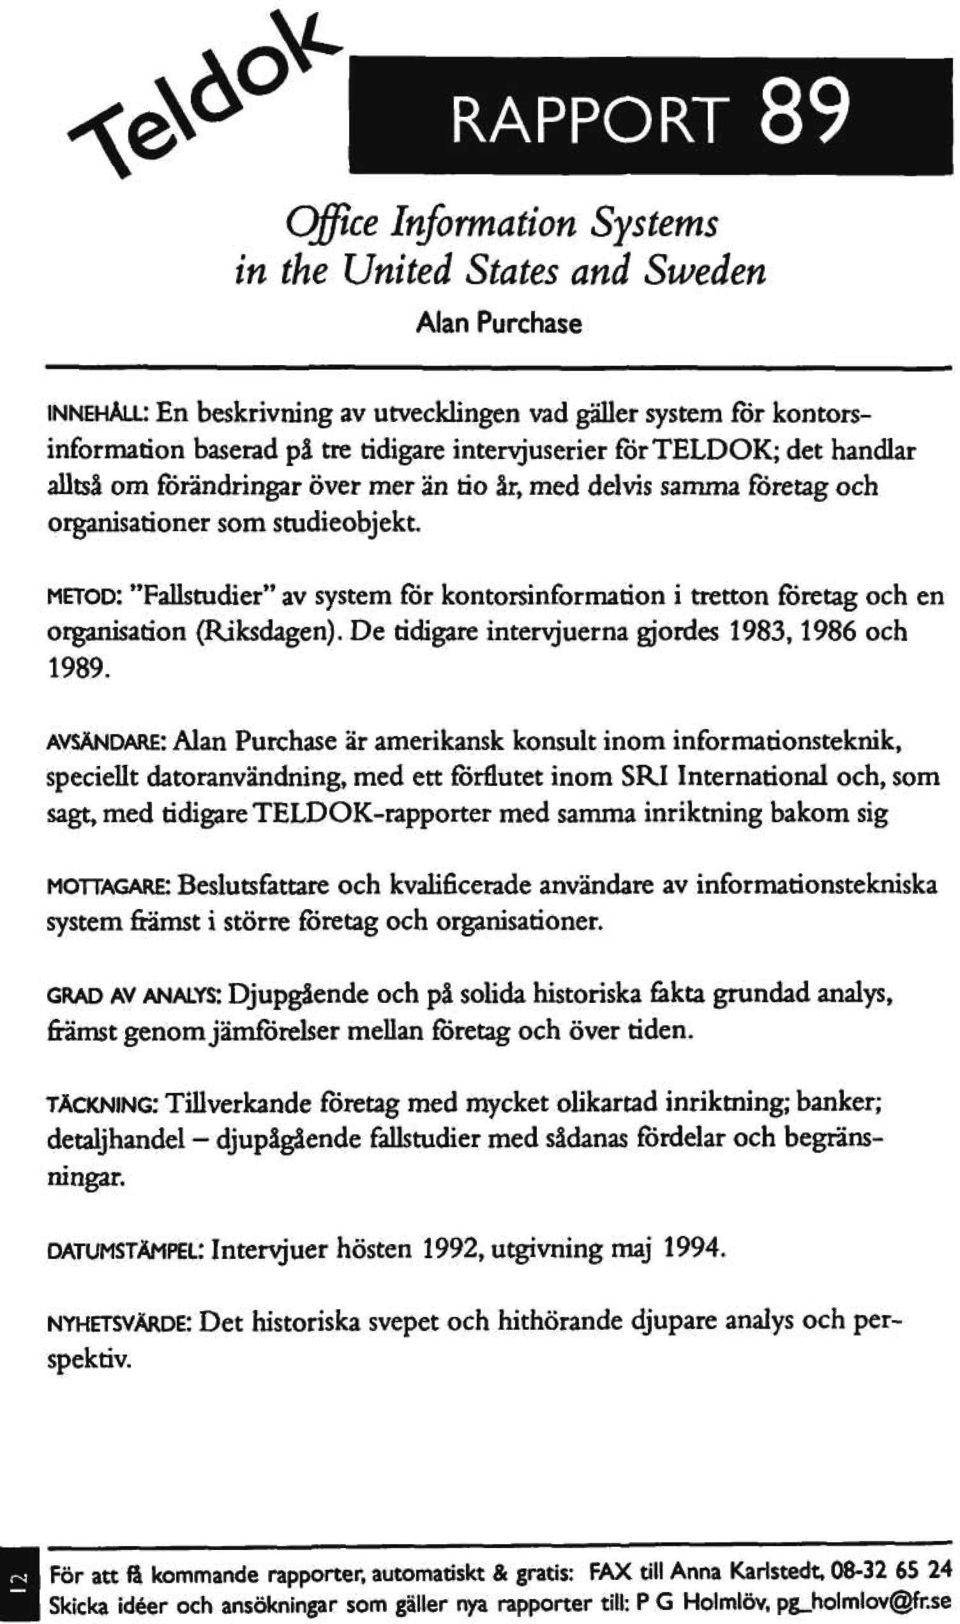 METOD: "Fallstudier" av system för kontorsinformation i tretton företag och en organisation (Riksdagen). De tidigare intervjuerna gjordes 1983,1986 och 1989.